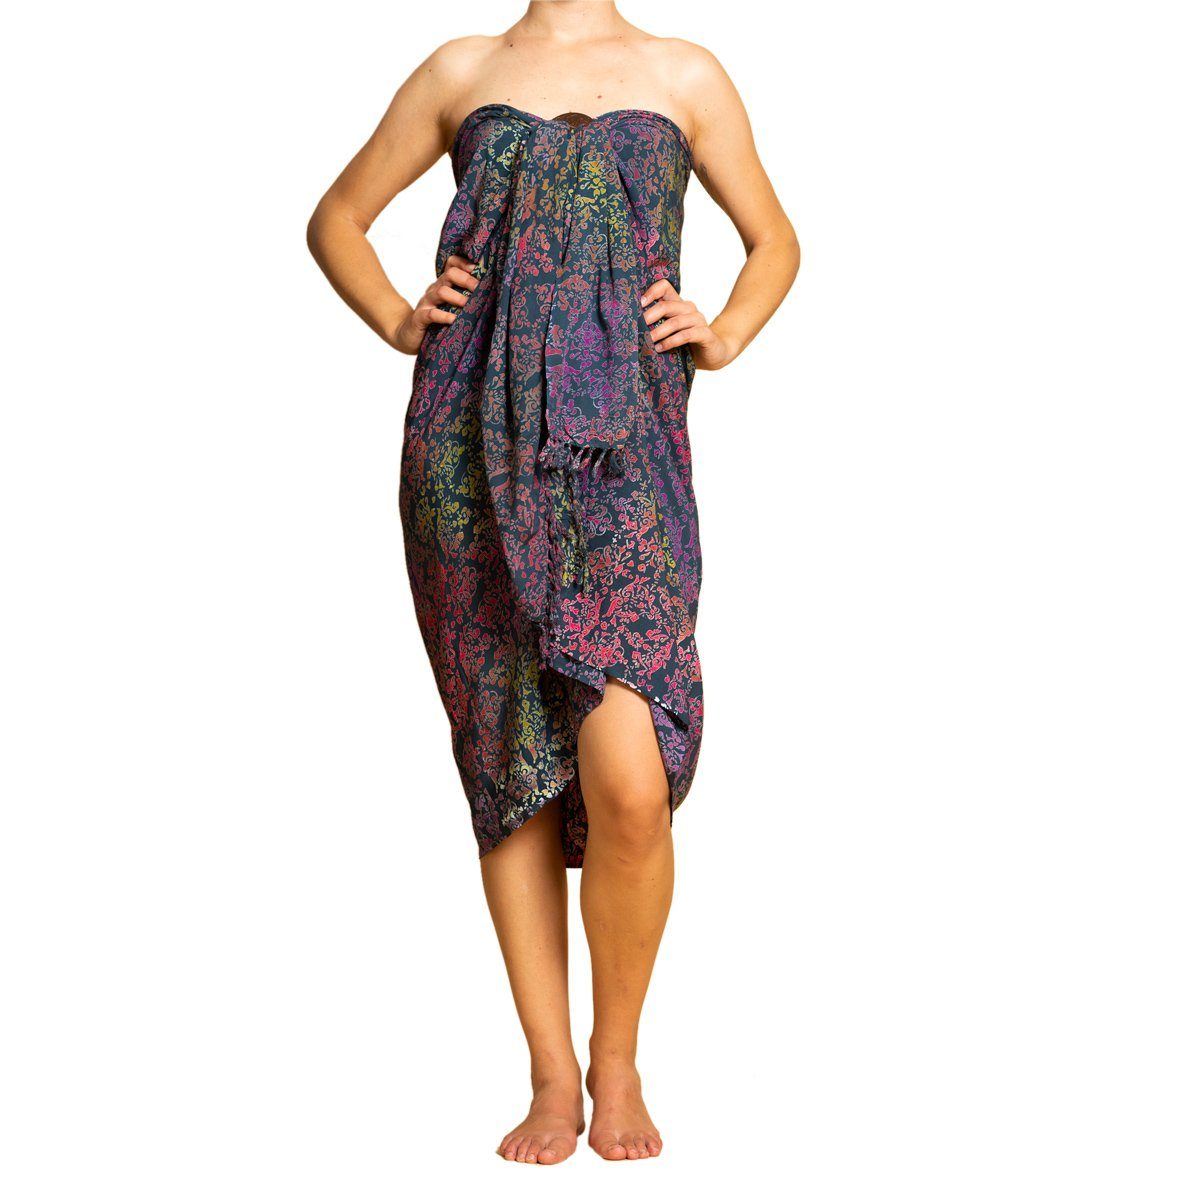 PANASIAM Pareo Designs Tuch den B024 Colored Strandtuch, Sarong Cover-up aus petrol hochwertiger Viskose Wachsbatik Strand Bikini für Strandkleid dunkle Halstuch Schultertuch